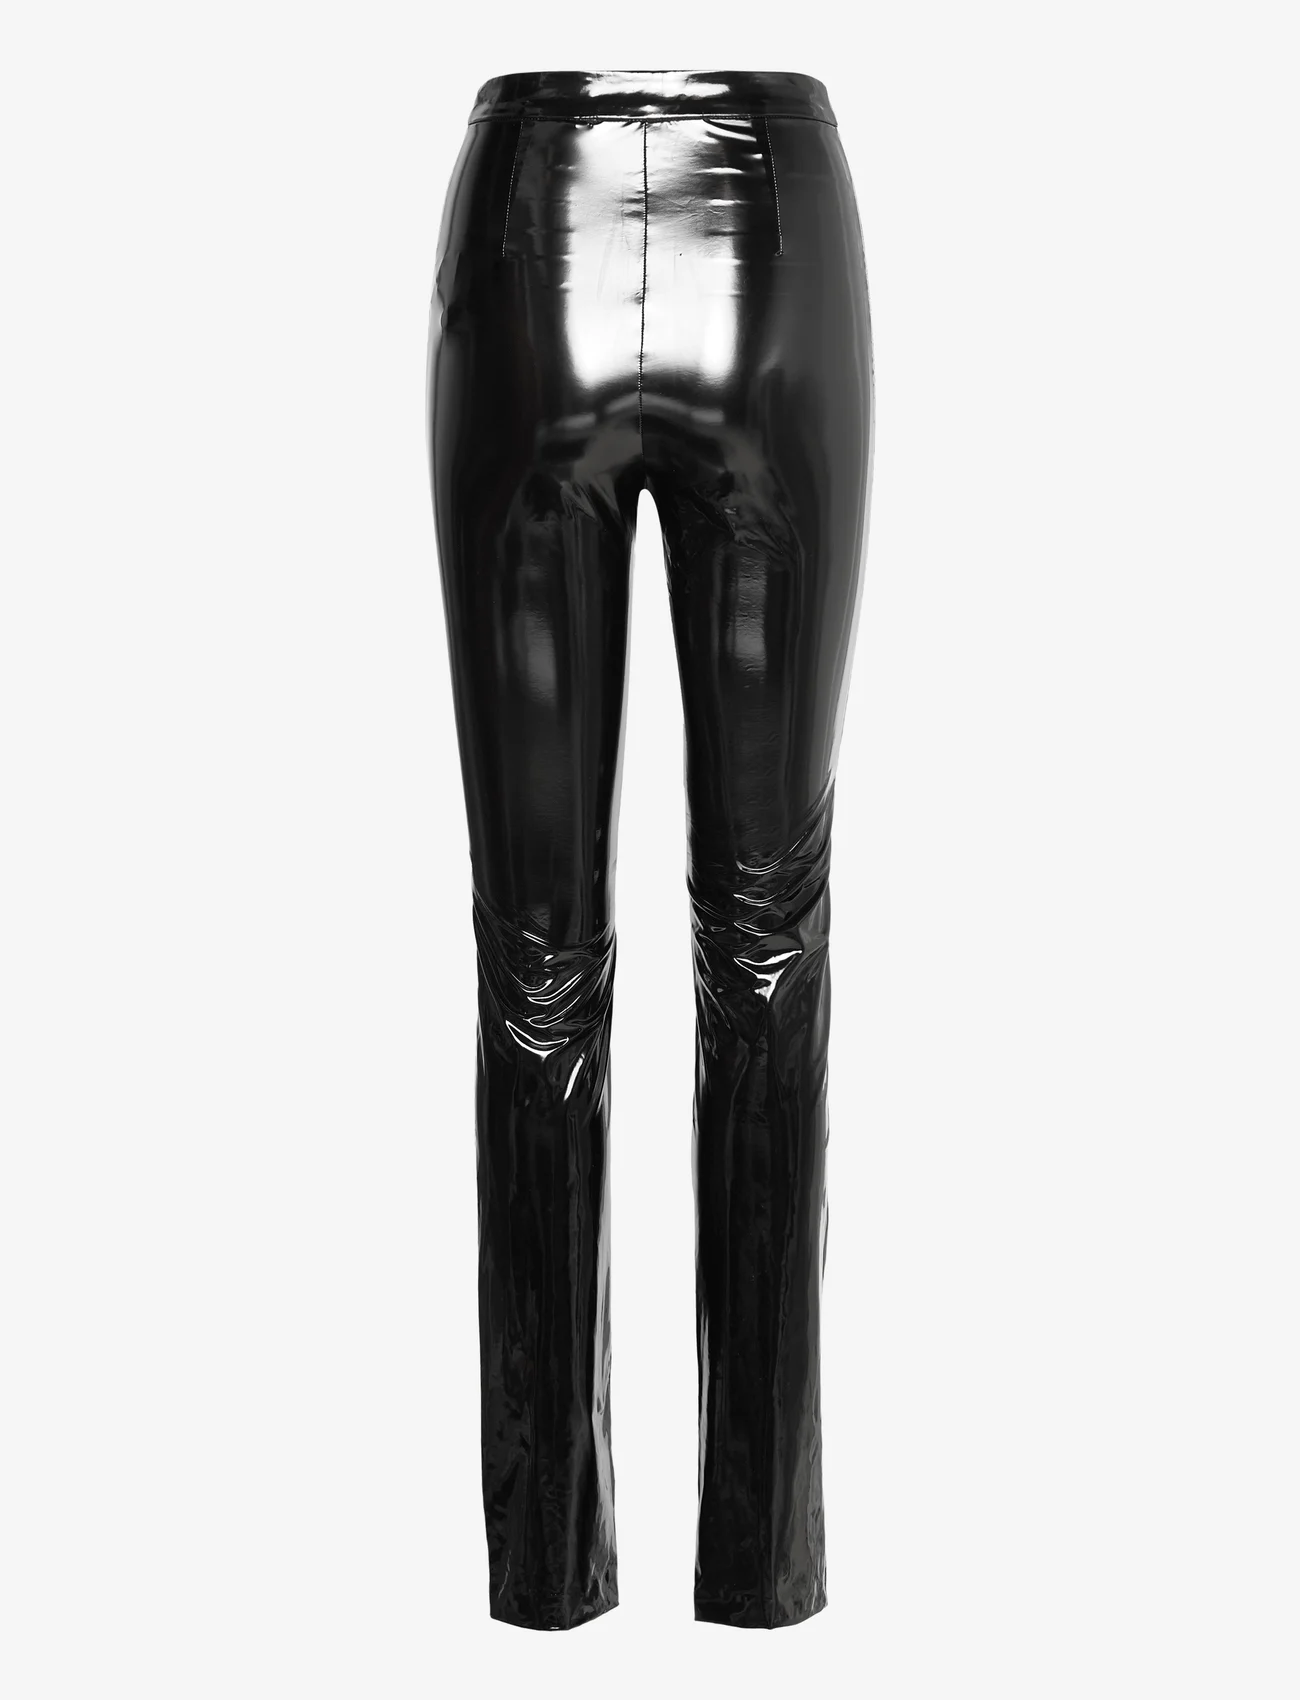 ROTATE Birger Christensen - Patent Coated Pants - odzież imprezowa w cenach outletowych - black - 1